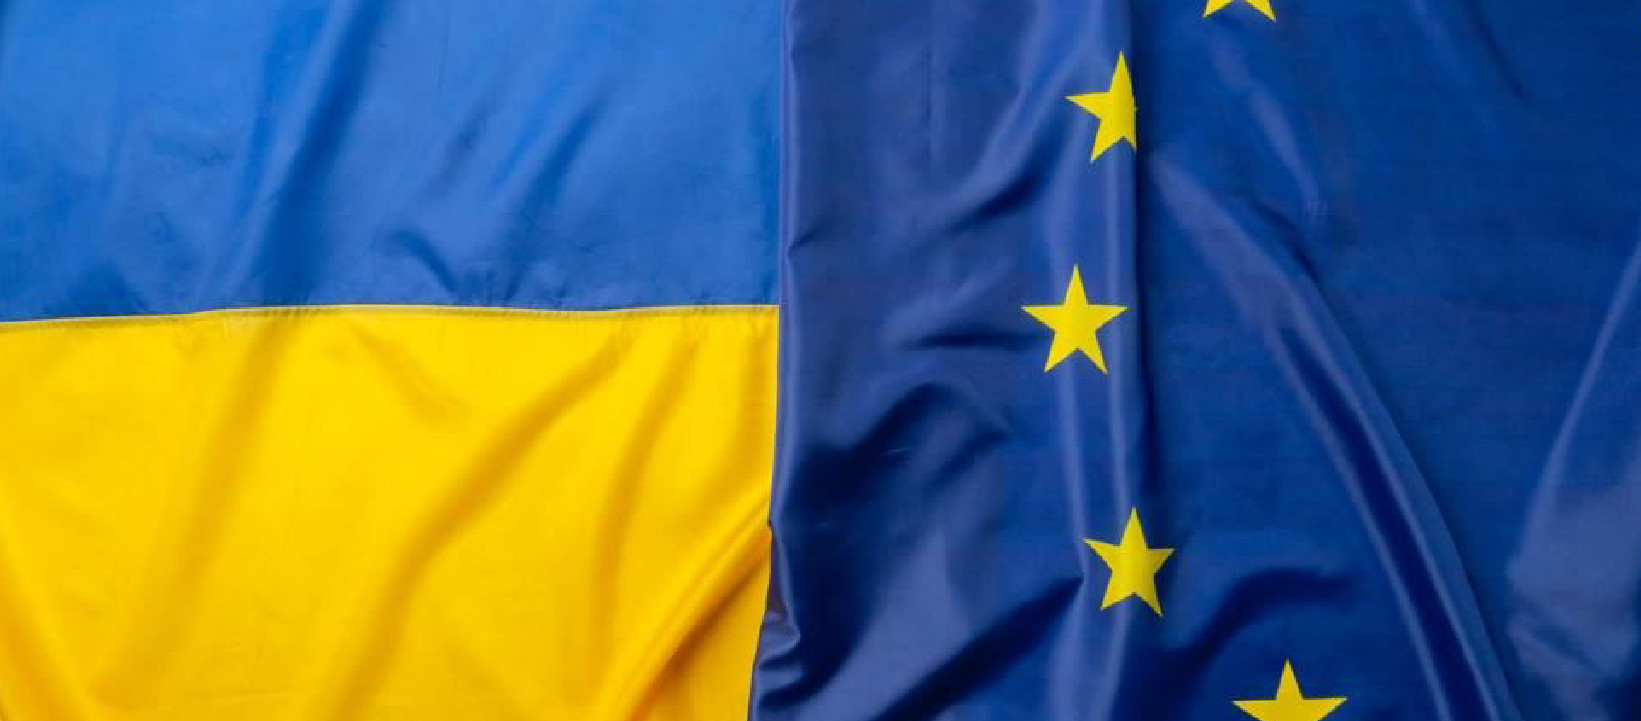 Лідери думок США і Європи закликали надати Україні статус кандидата в членство в Євросоюзі